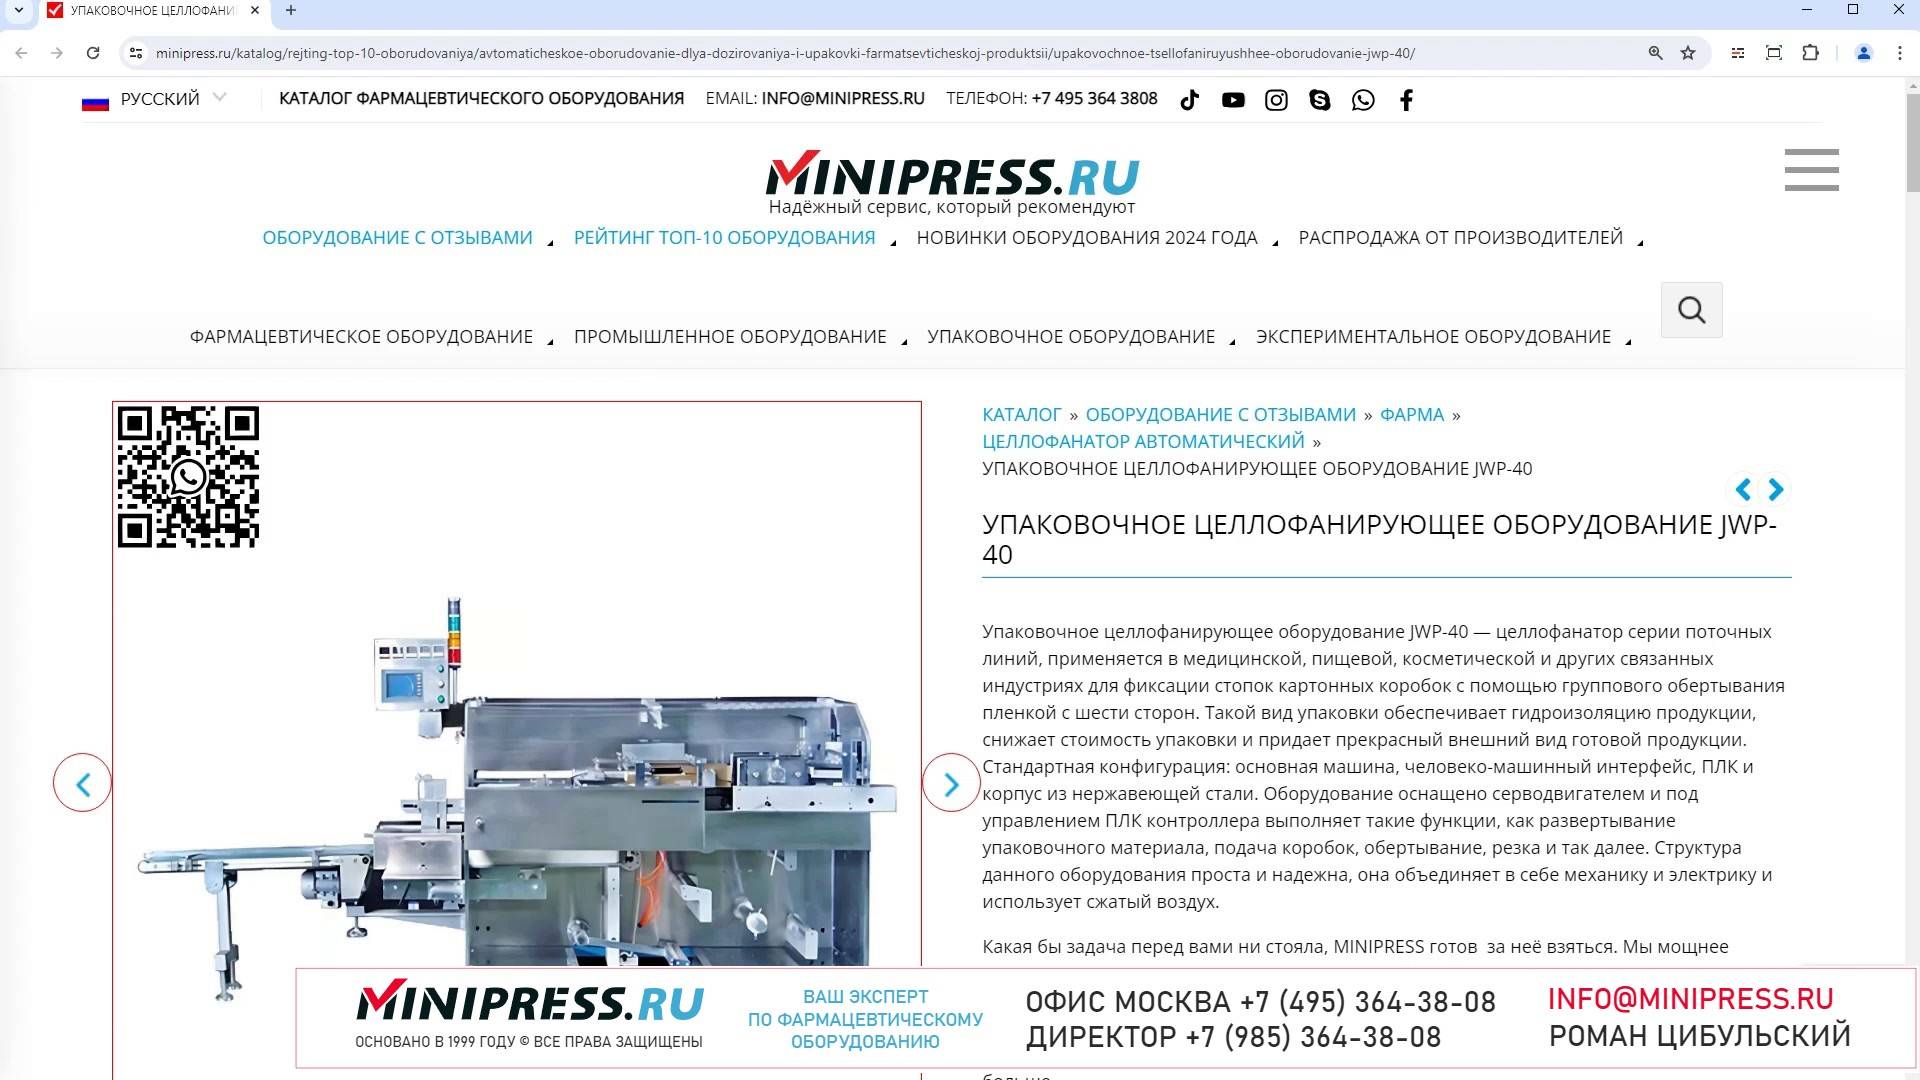 Minipress.ru Упаковочное целлофанирующее оборудование JWP-40